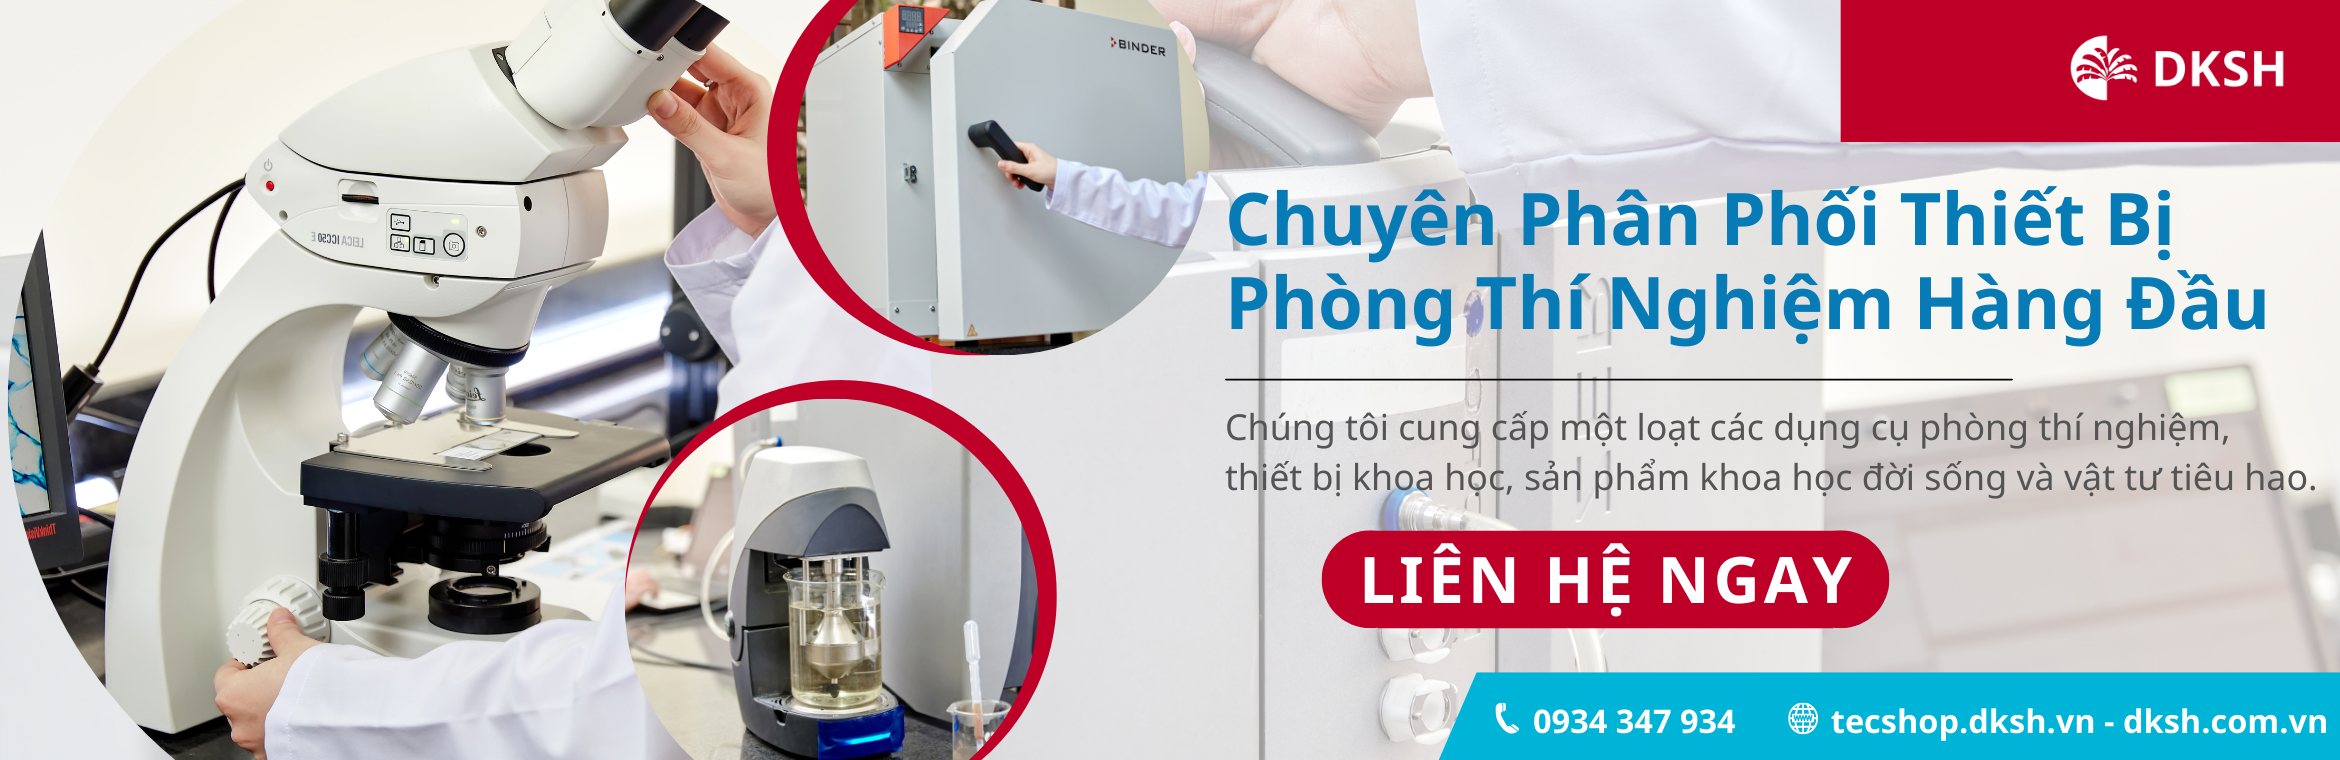 DKSH Technology Vietnam